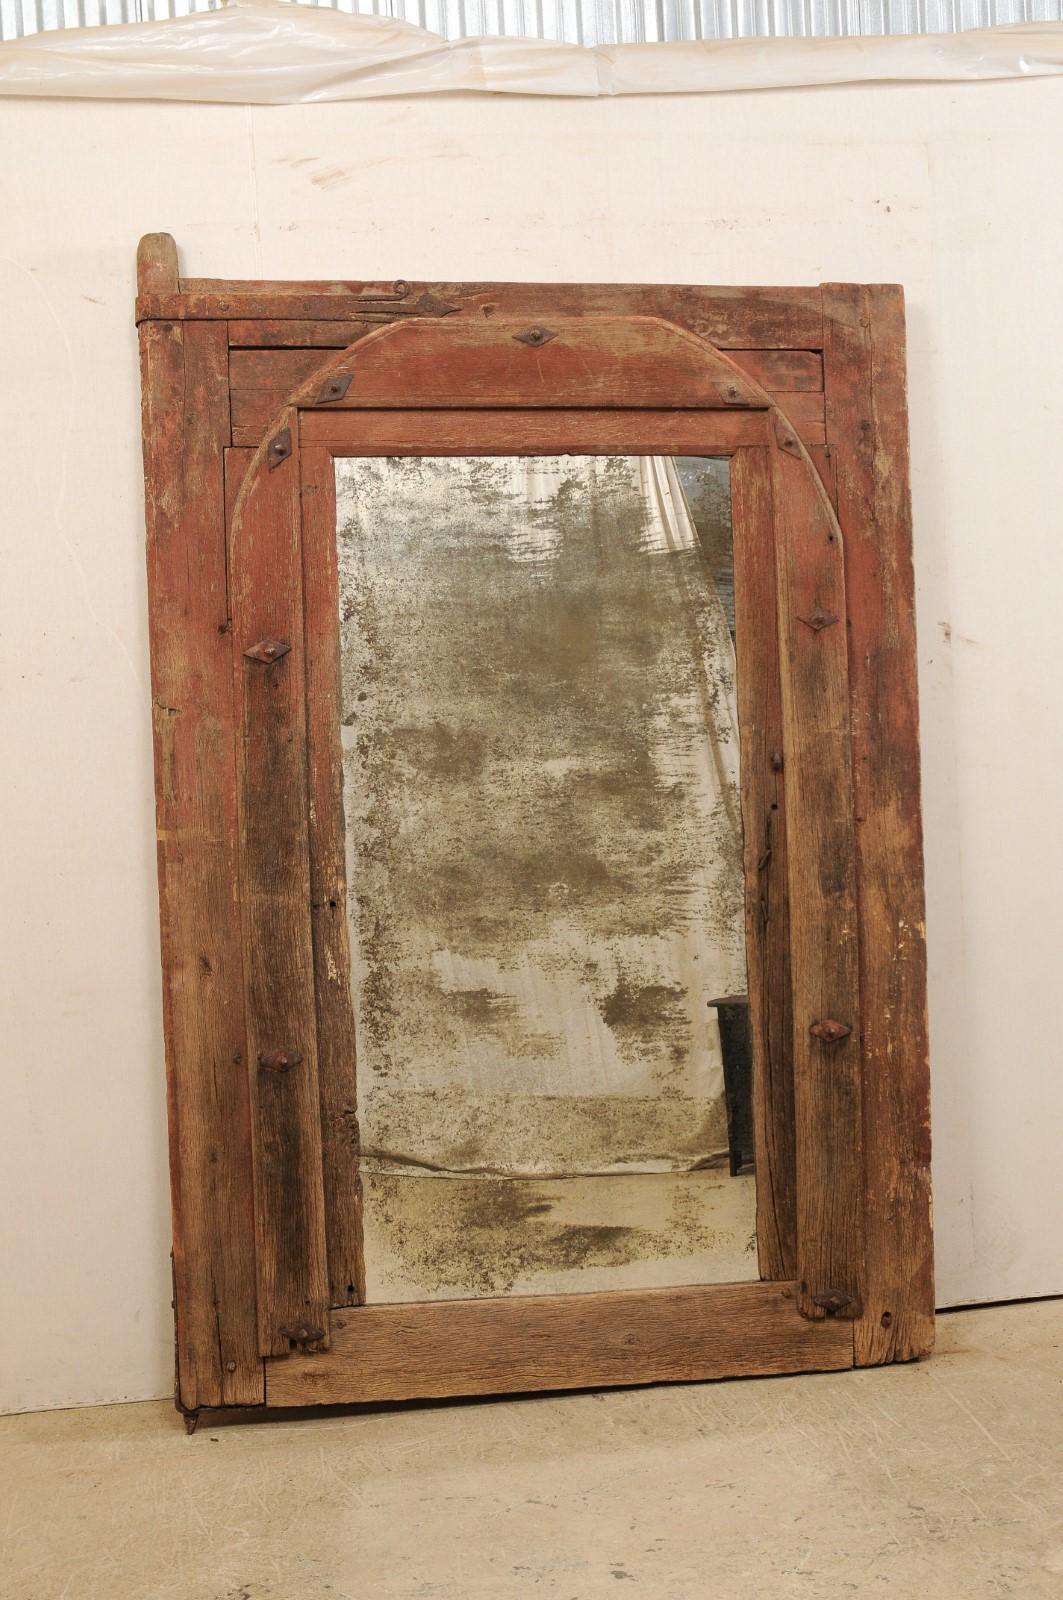 Un miroir personnalisé unique en son genre utilisant un cadre de porte espagnole du 18e siècle comme cadre. Ce cadre de porte antique en bois provenant d'Espagne sert de cadre à ce miroir conçu sur mesure qui s'élève de manière impressionnante à